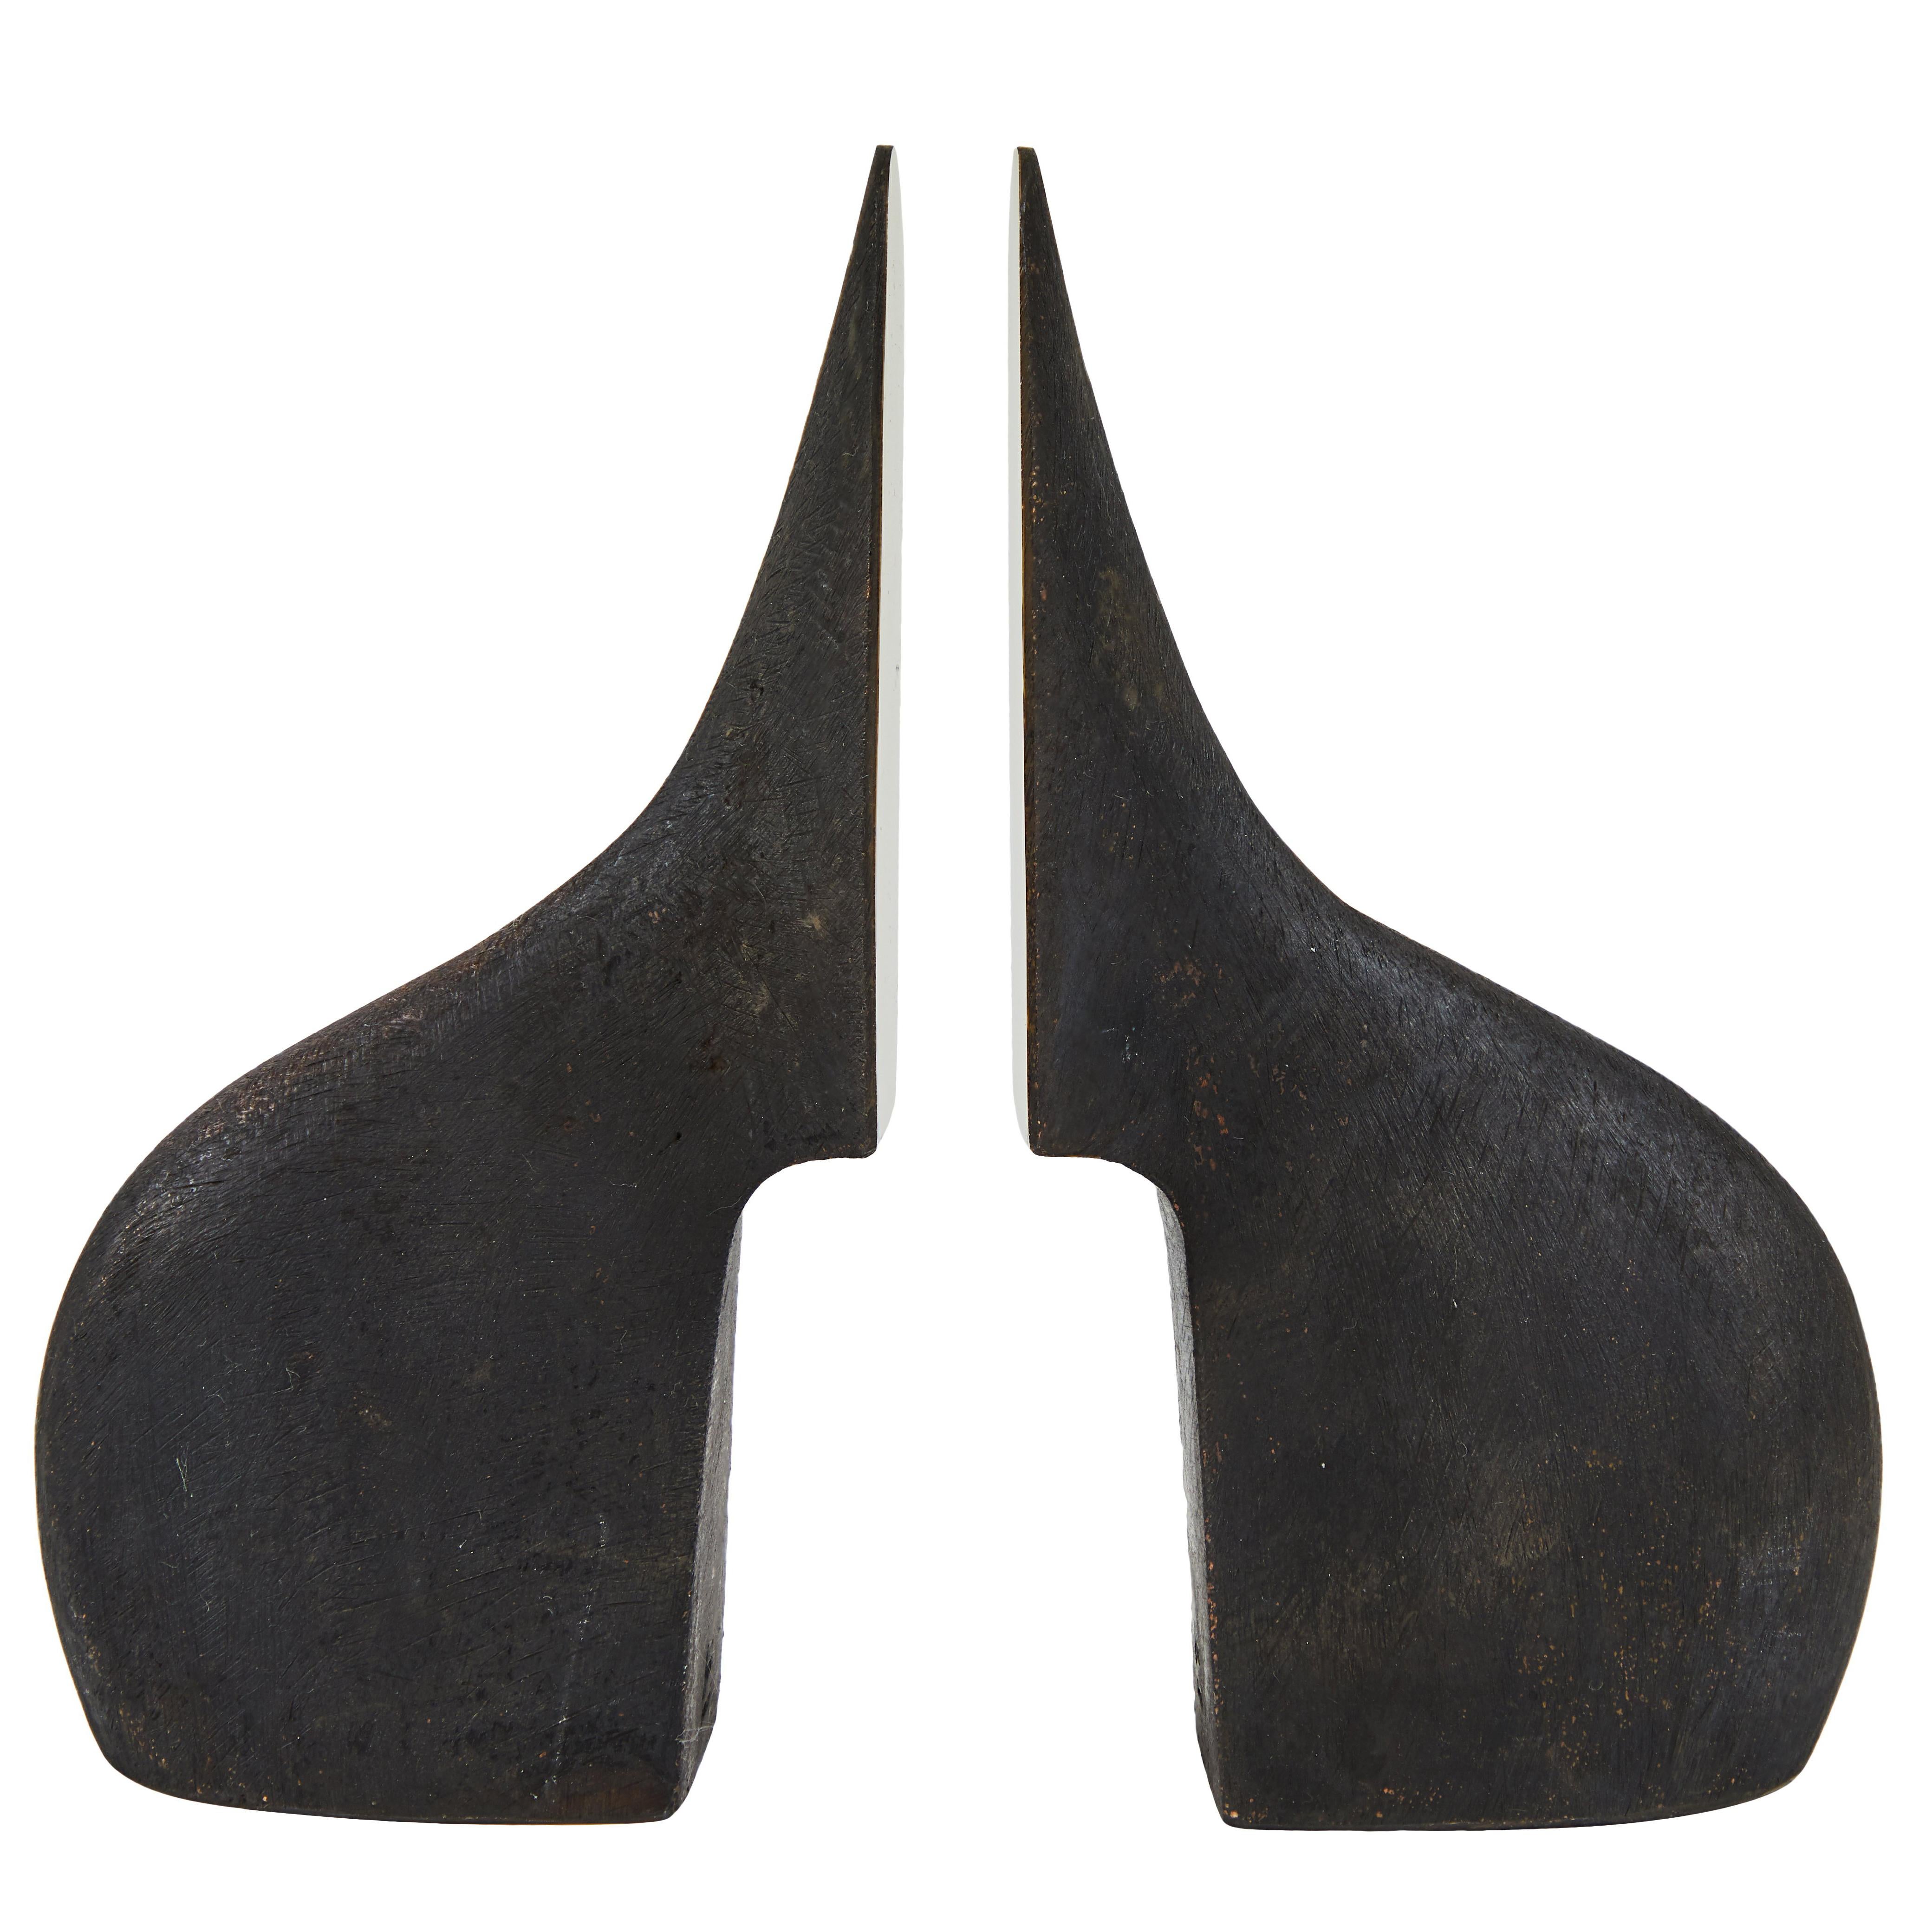 Conjunto de ocho sujetalibros de latón Carl Auböck. Incluye un par de cada uno de los modelos #3651, #3652, #3653 y #3654. Diseñados en la década de 1950, estos sujetalibros increíblemente refinados y escultóricos están realizados en latón patinado